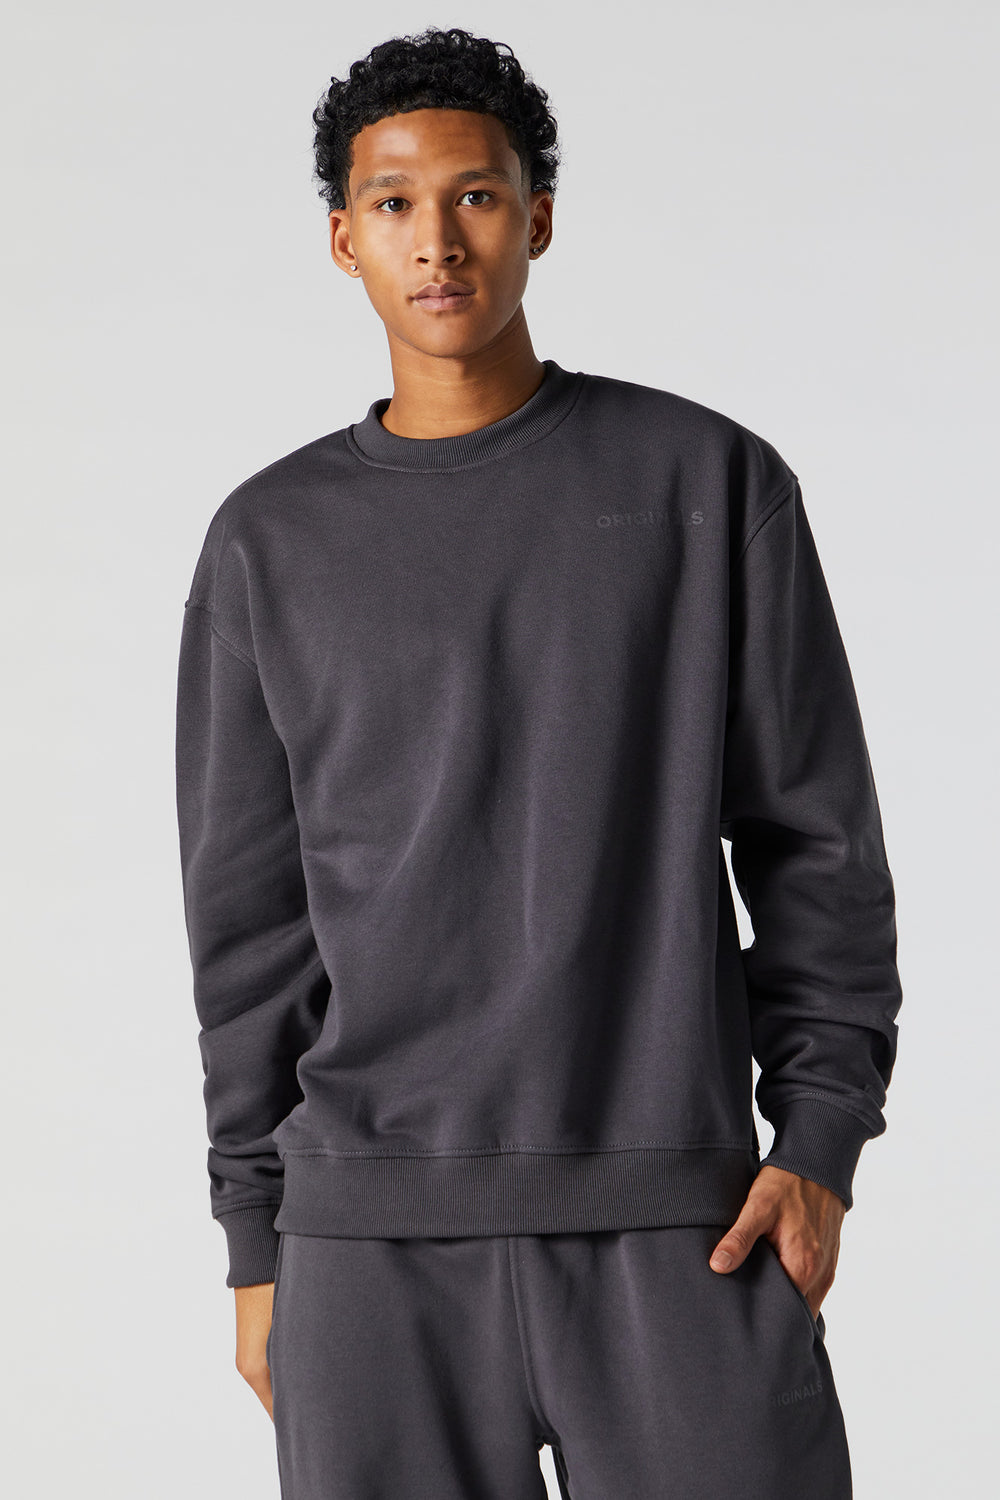 Originals Fleece Sweatshirt Originals Fleece Sweatshirt 2